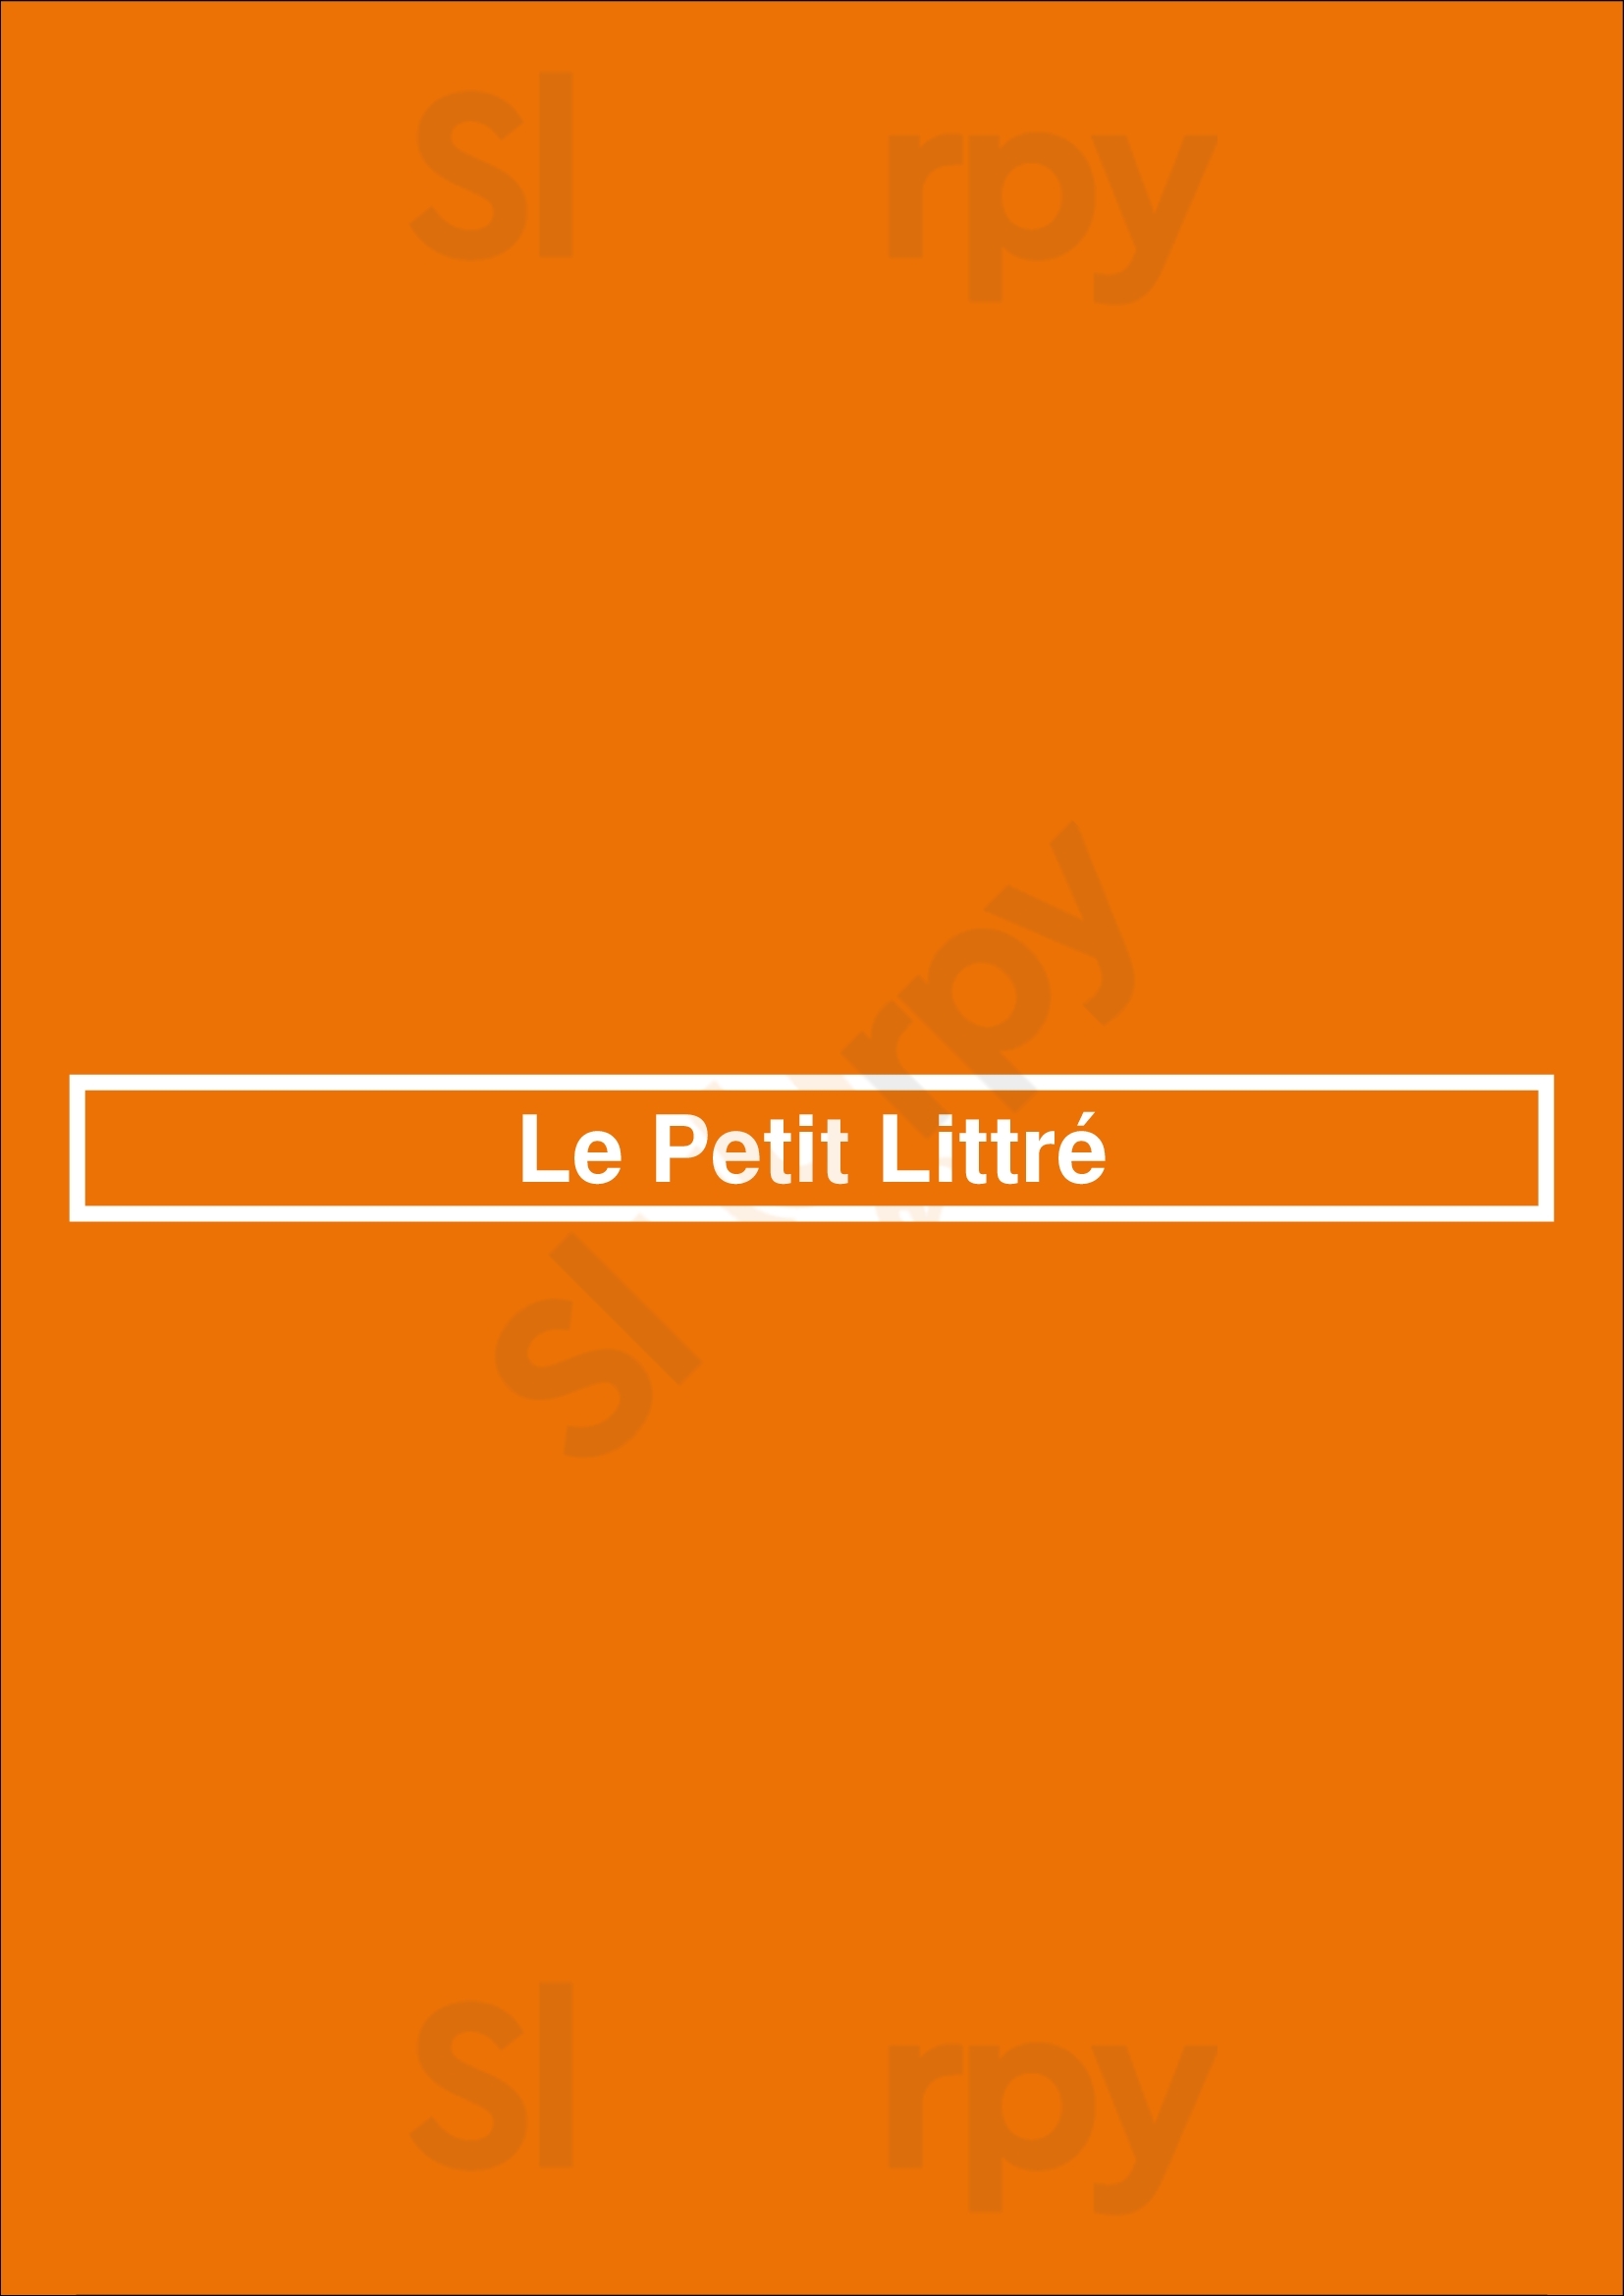 Le Petit Littré Paris Menu - 1